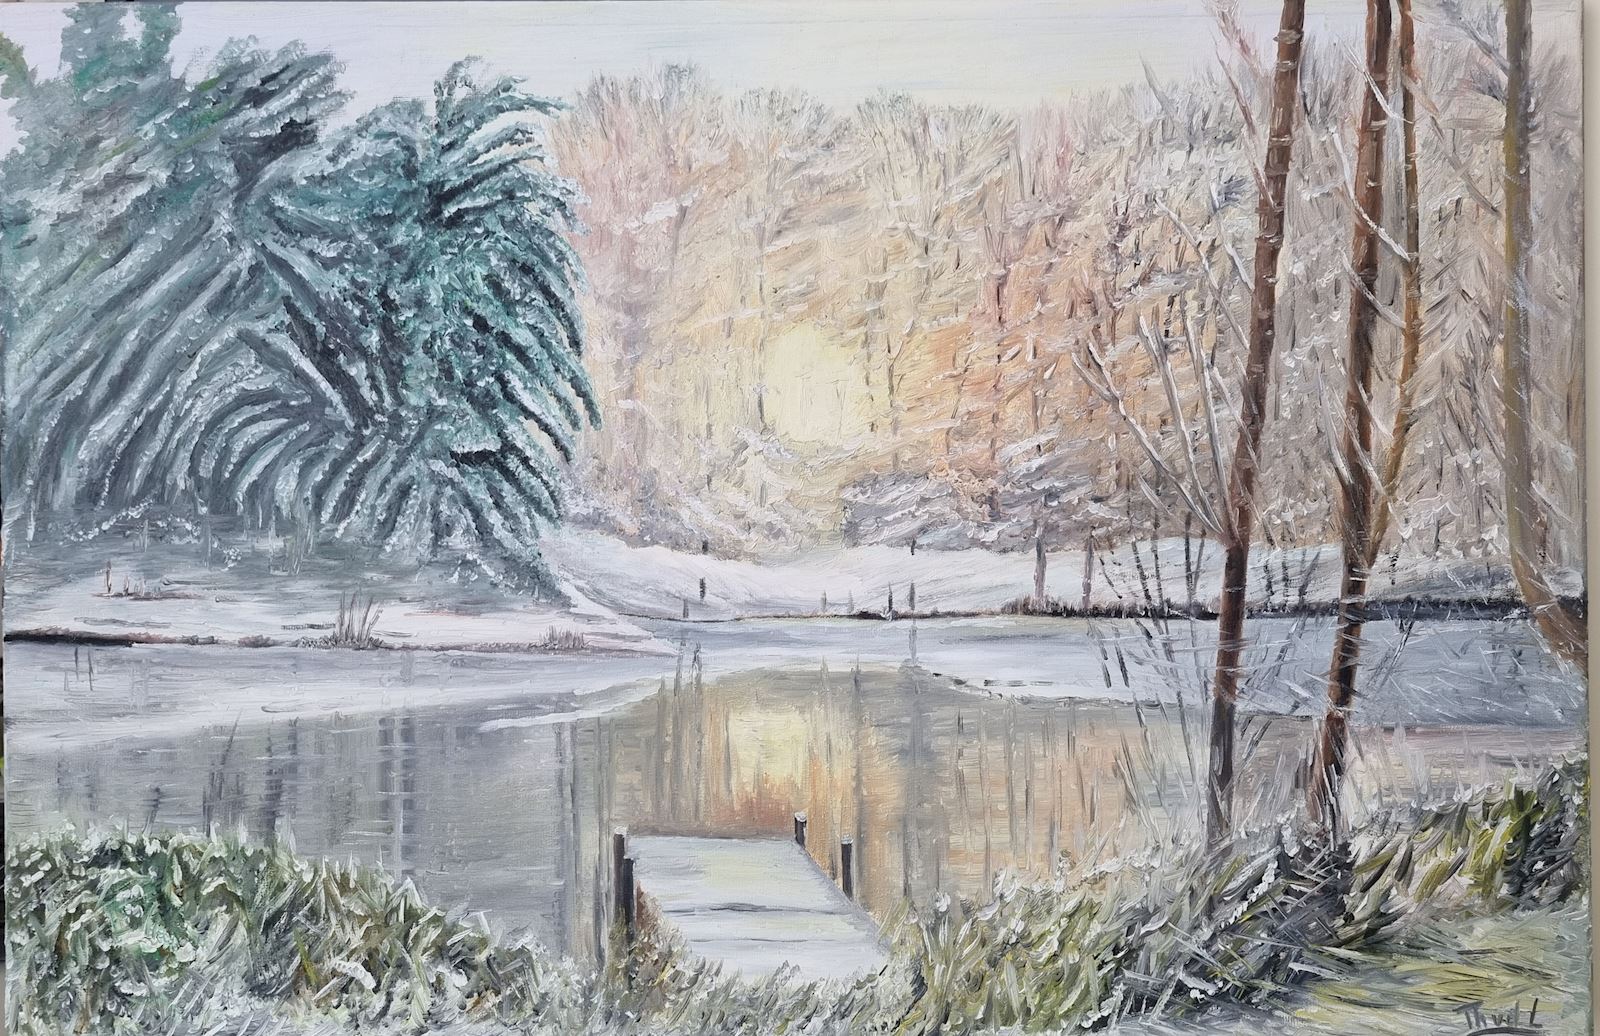 Winter Theo van der linden opkomende zon wintertafereel bos sneeuw ijs noordwijk schilderij kunst uit de kast